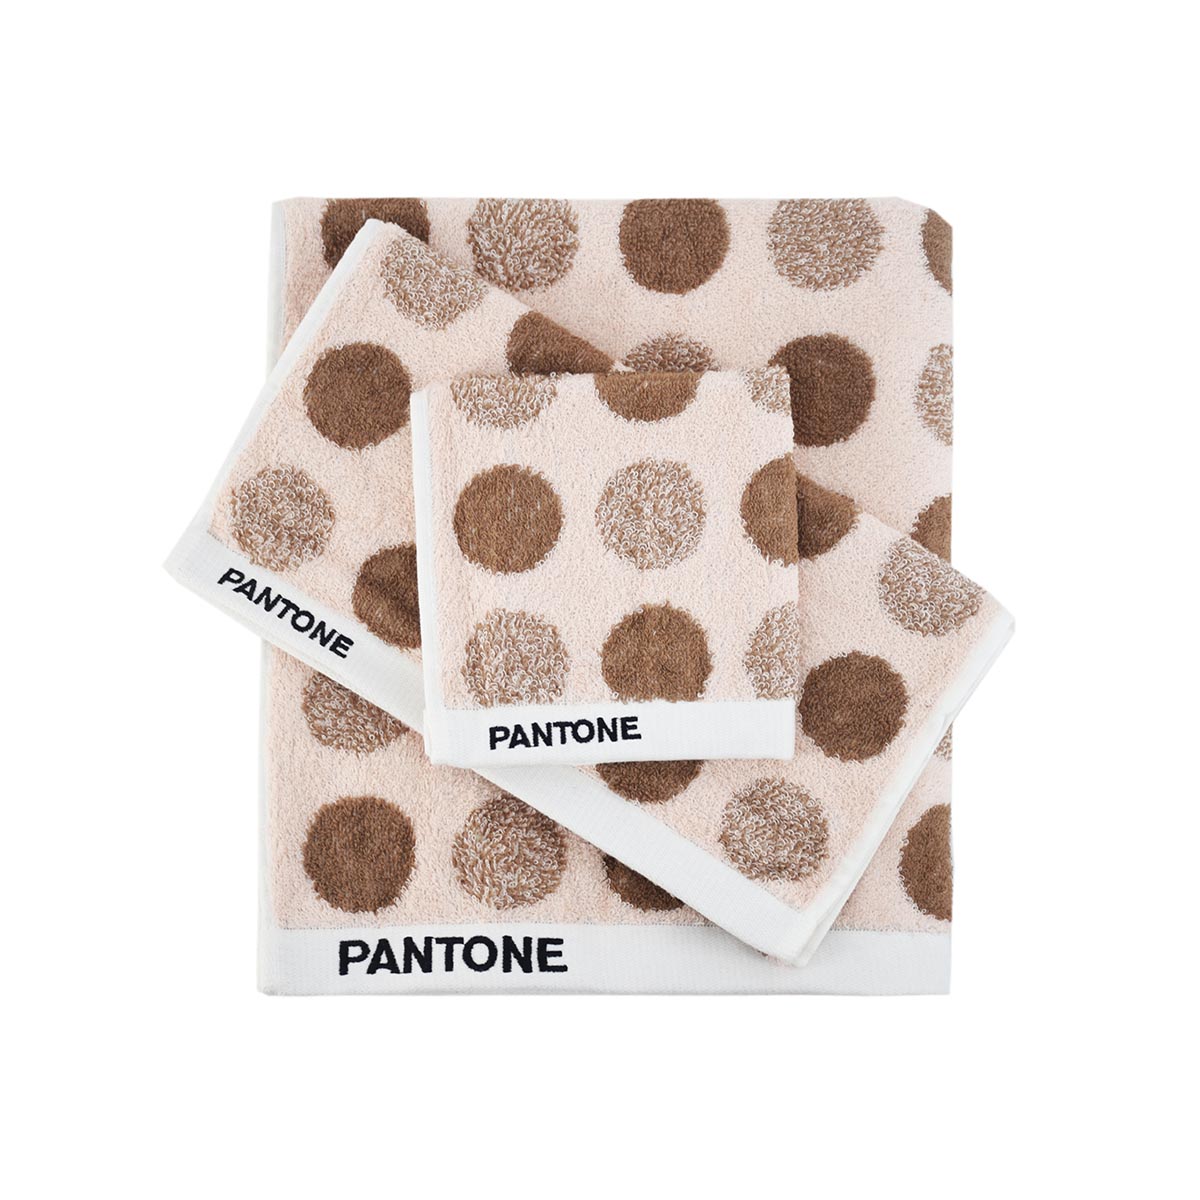 PANTONE 100% 優質純棉印花 3合1 毛巾套裝 GB11T